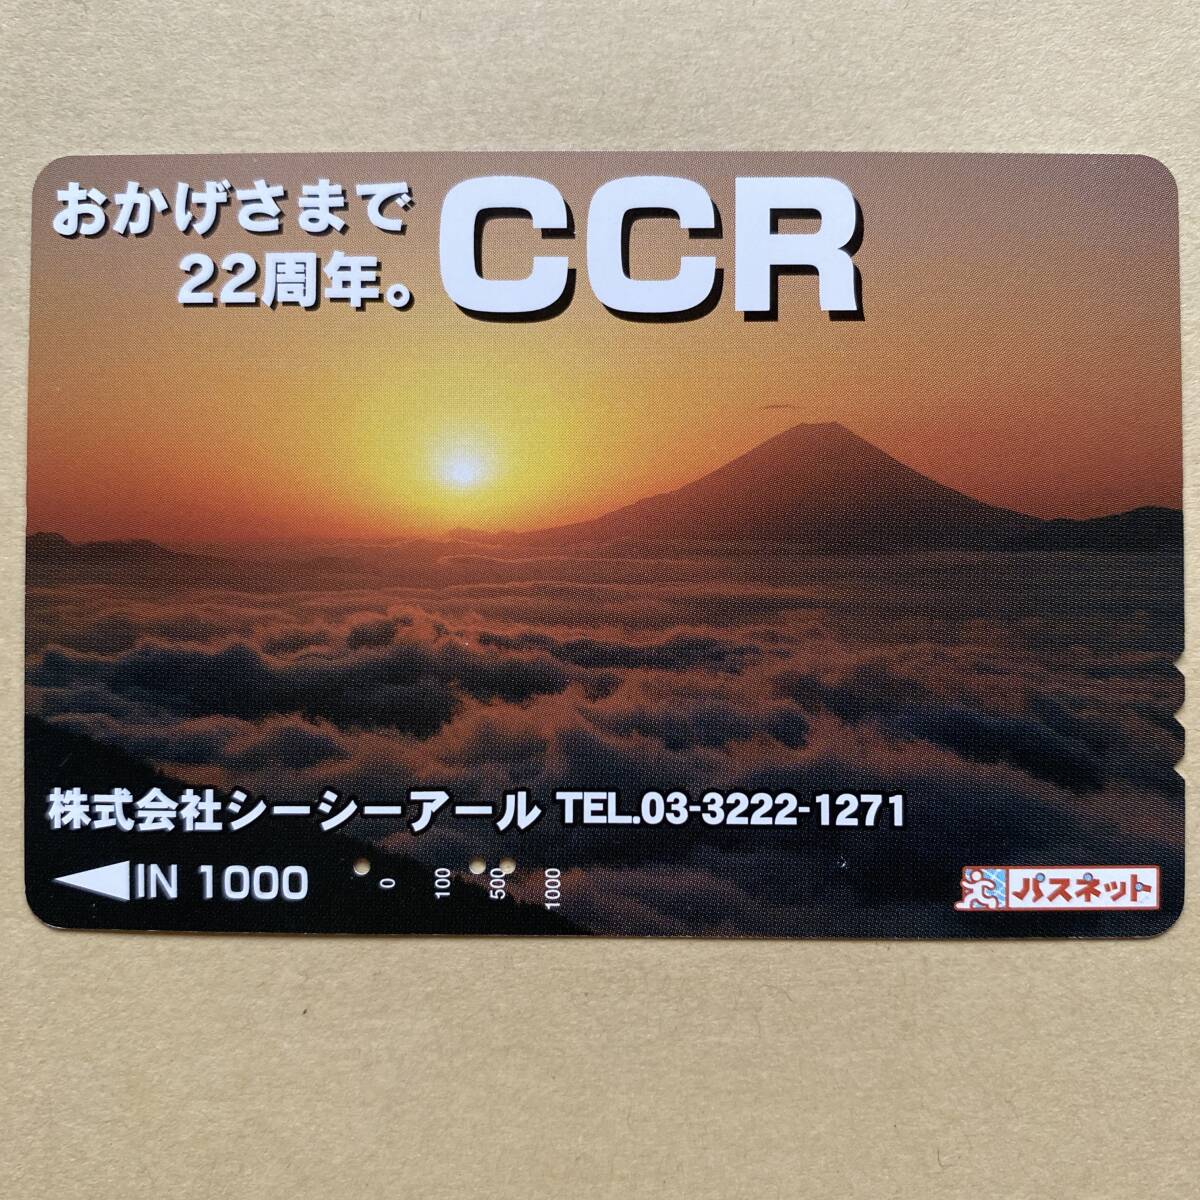 [ использованный ] Pas сеть столица . экспресс электро- металлический столица внезапный к счастью 22 годовщина. CCR гора Фудзи 